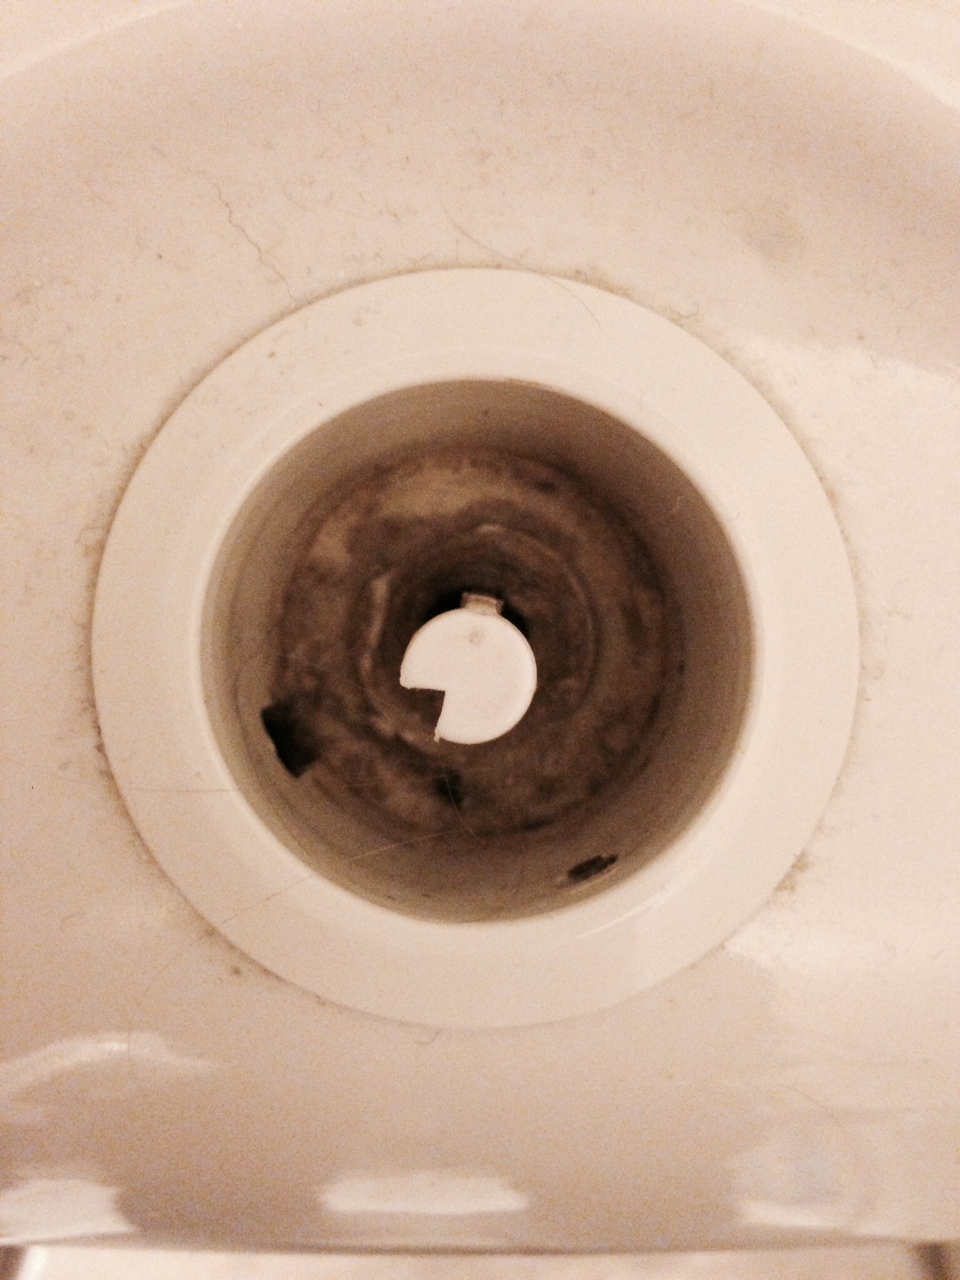 Hjelp til å åpne sisterne på toalett - bilde 1.JPG - bighc